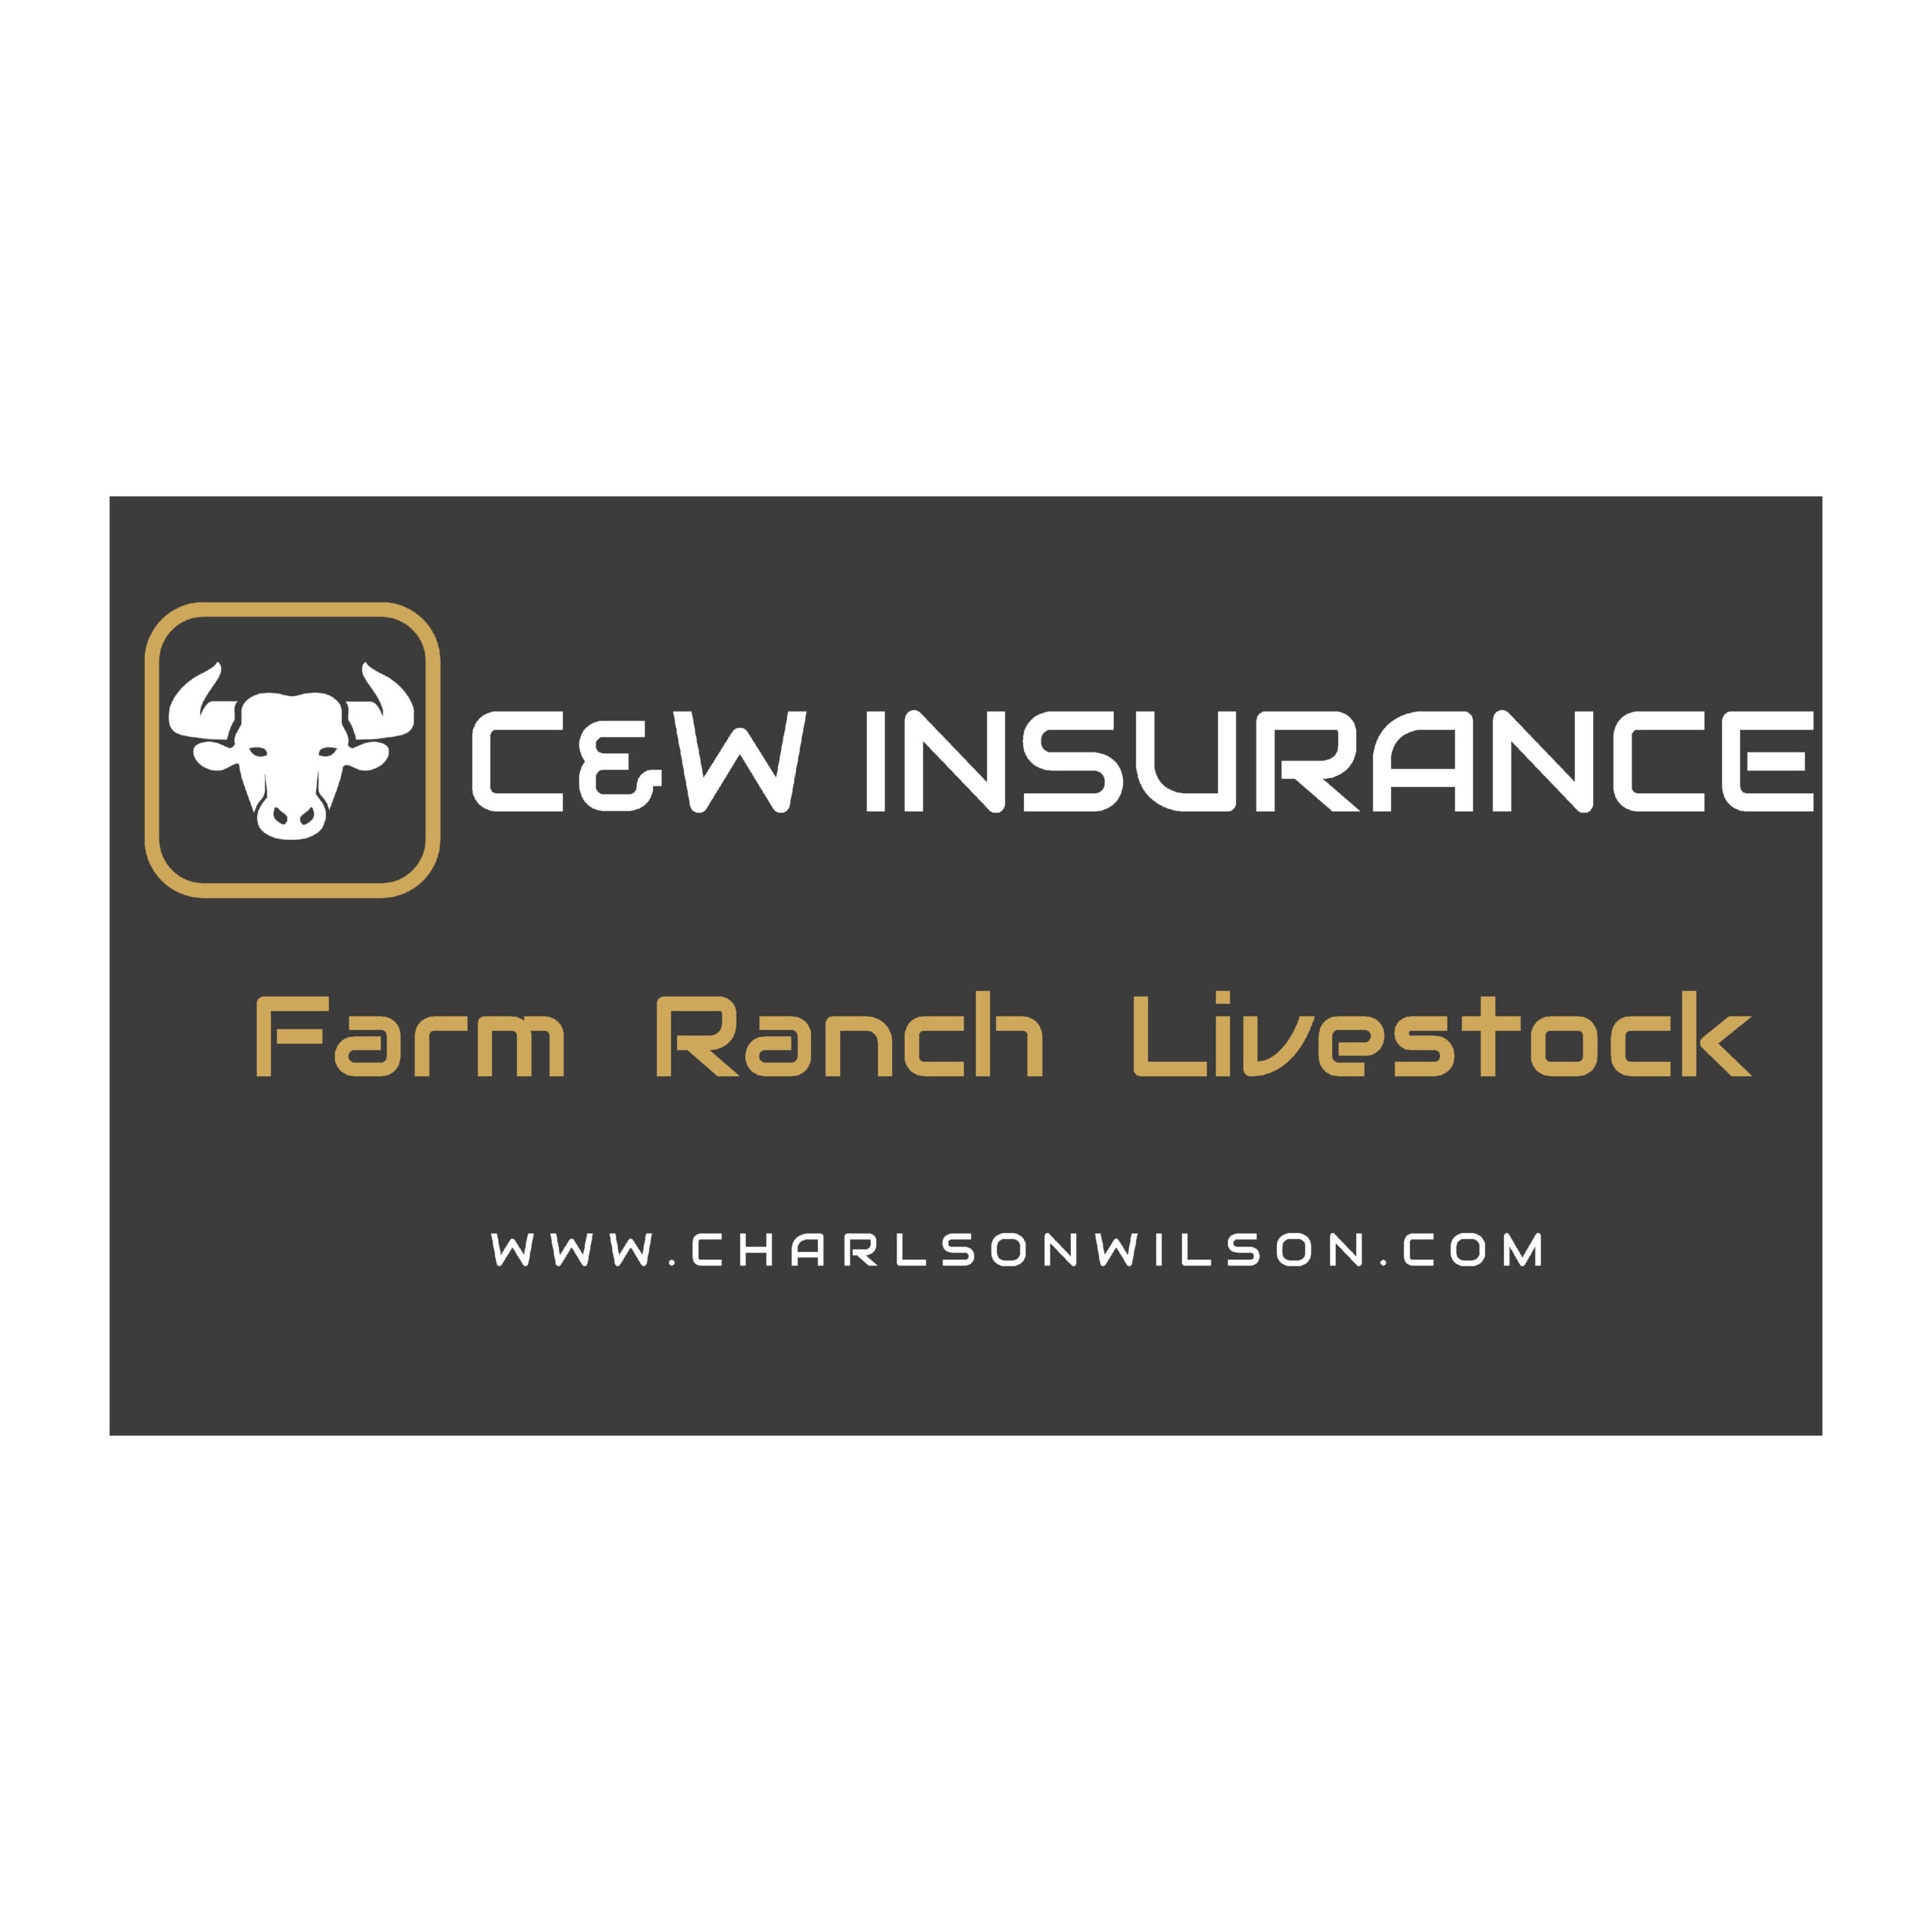 C&W Insurance